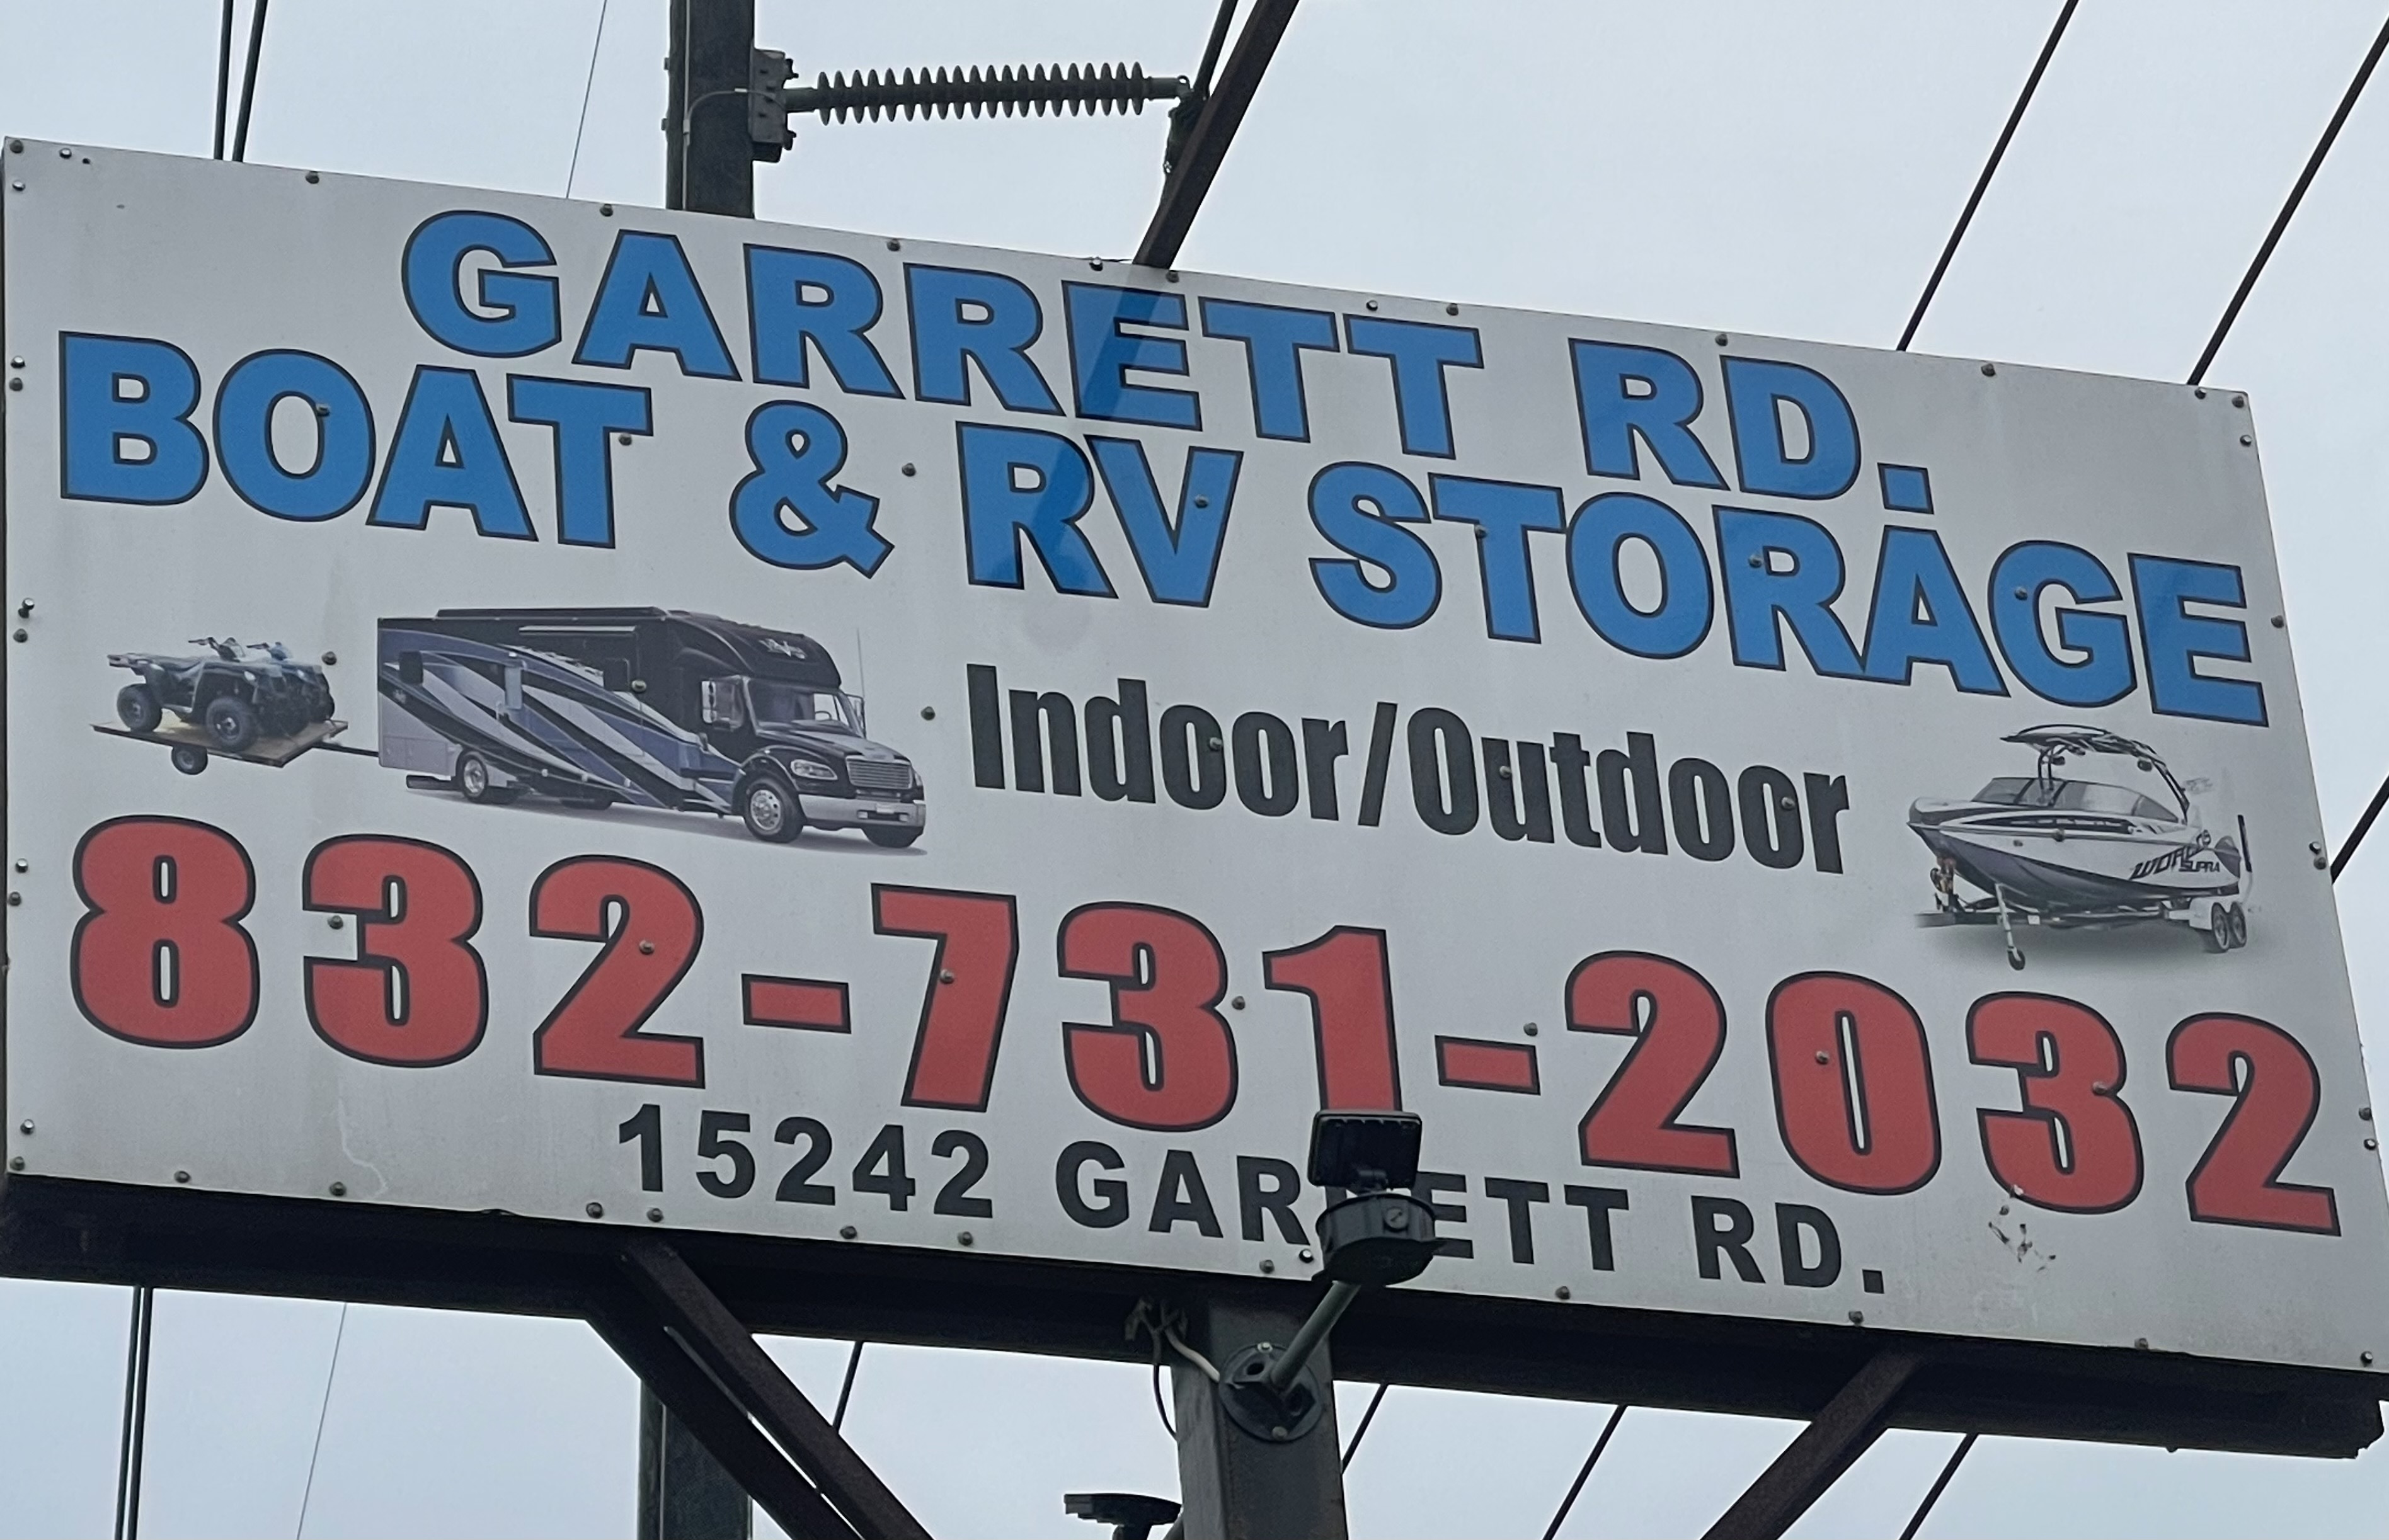 garrett rd boat & Rv storage houston, tx